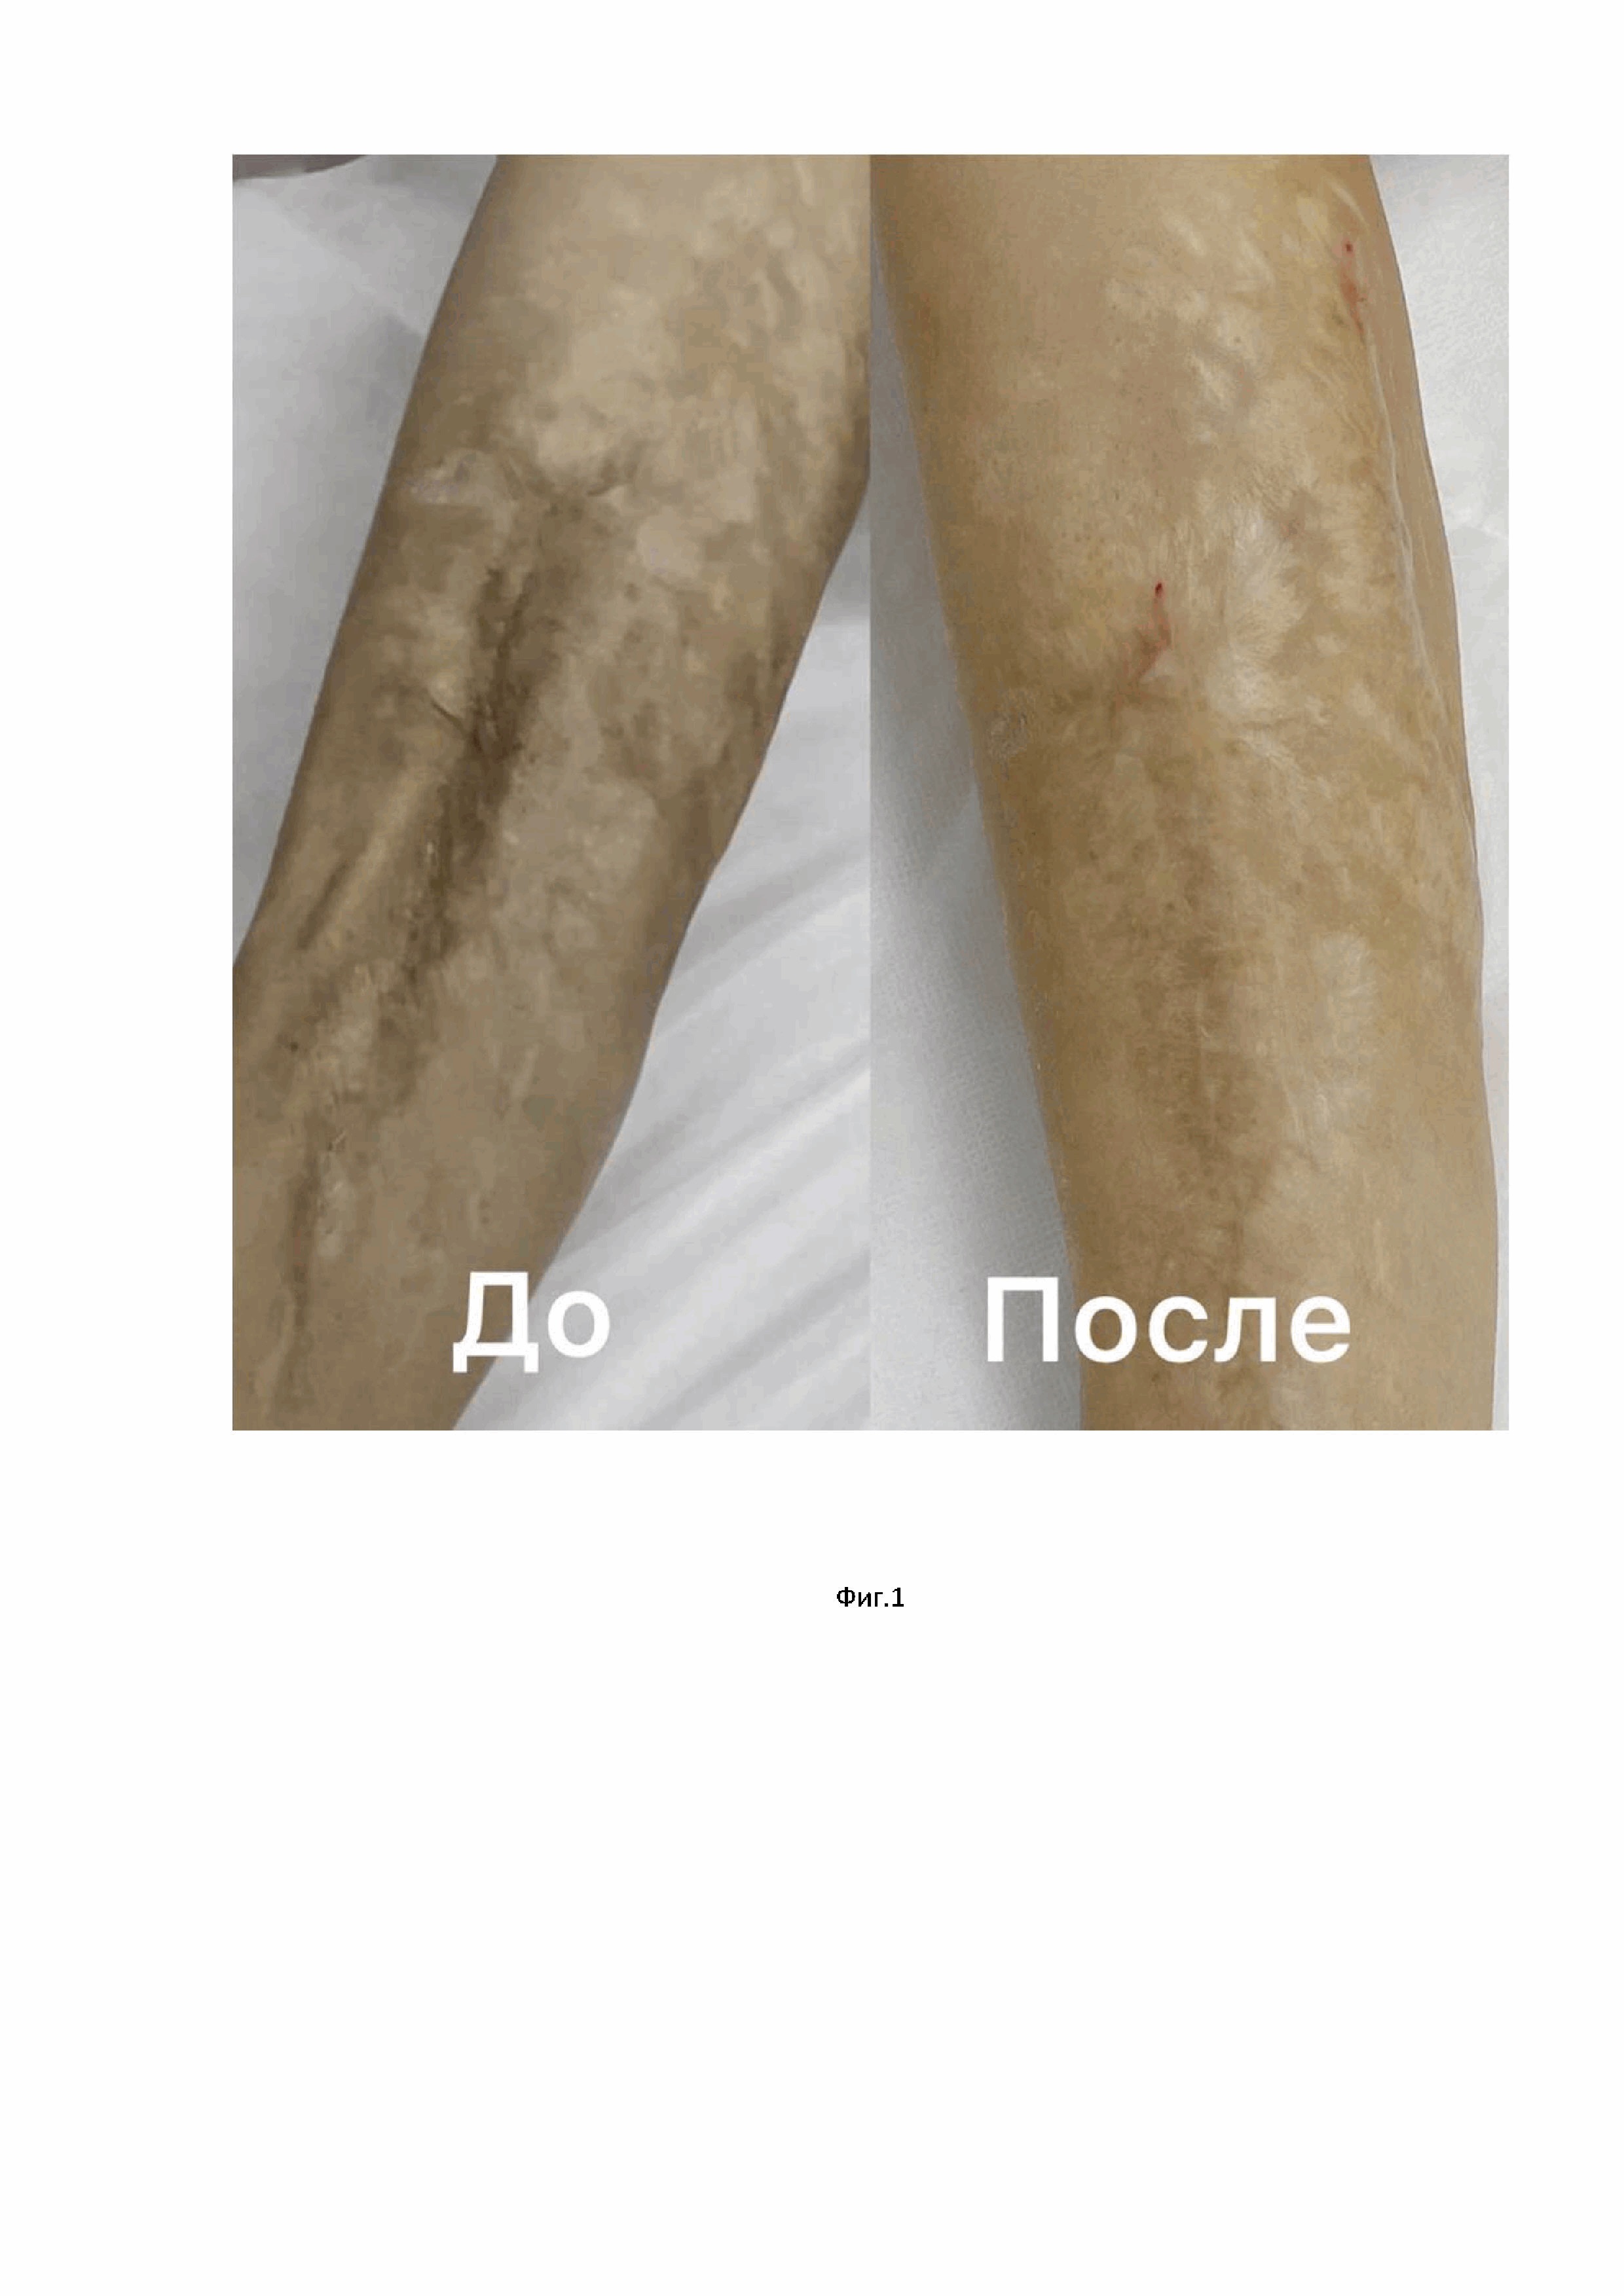 Способ лечения рубцов кожи, спаянных с подлежащими тканями